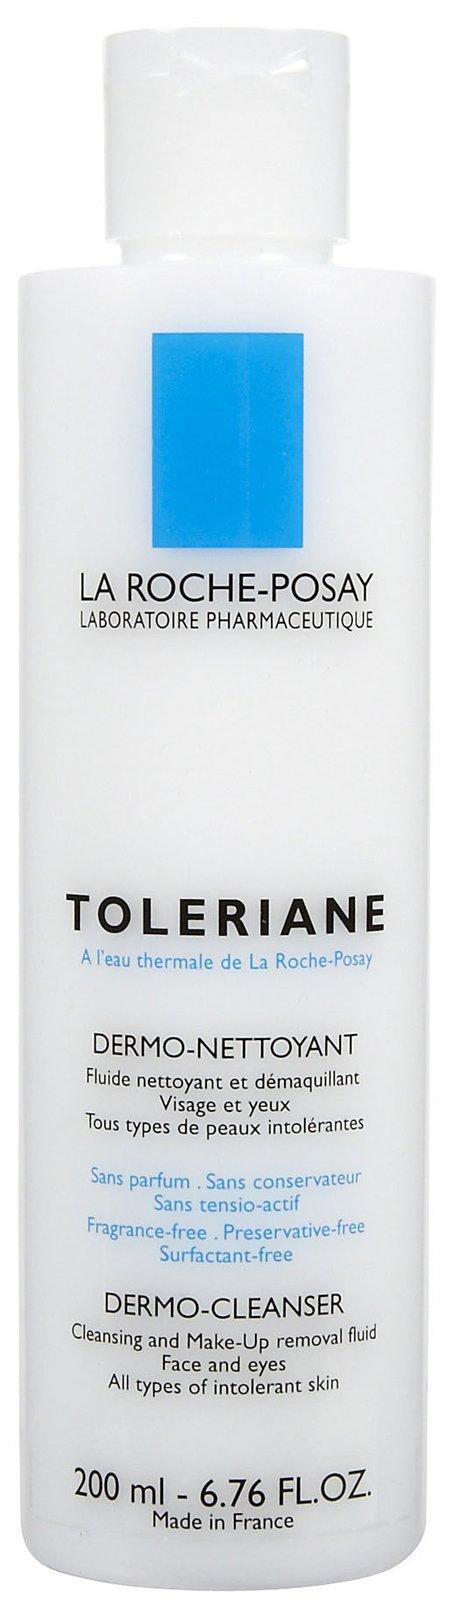 La Roche-posay Toleriane Dermo-cleanser